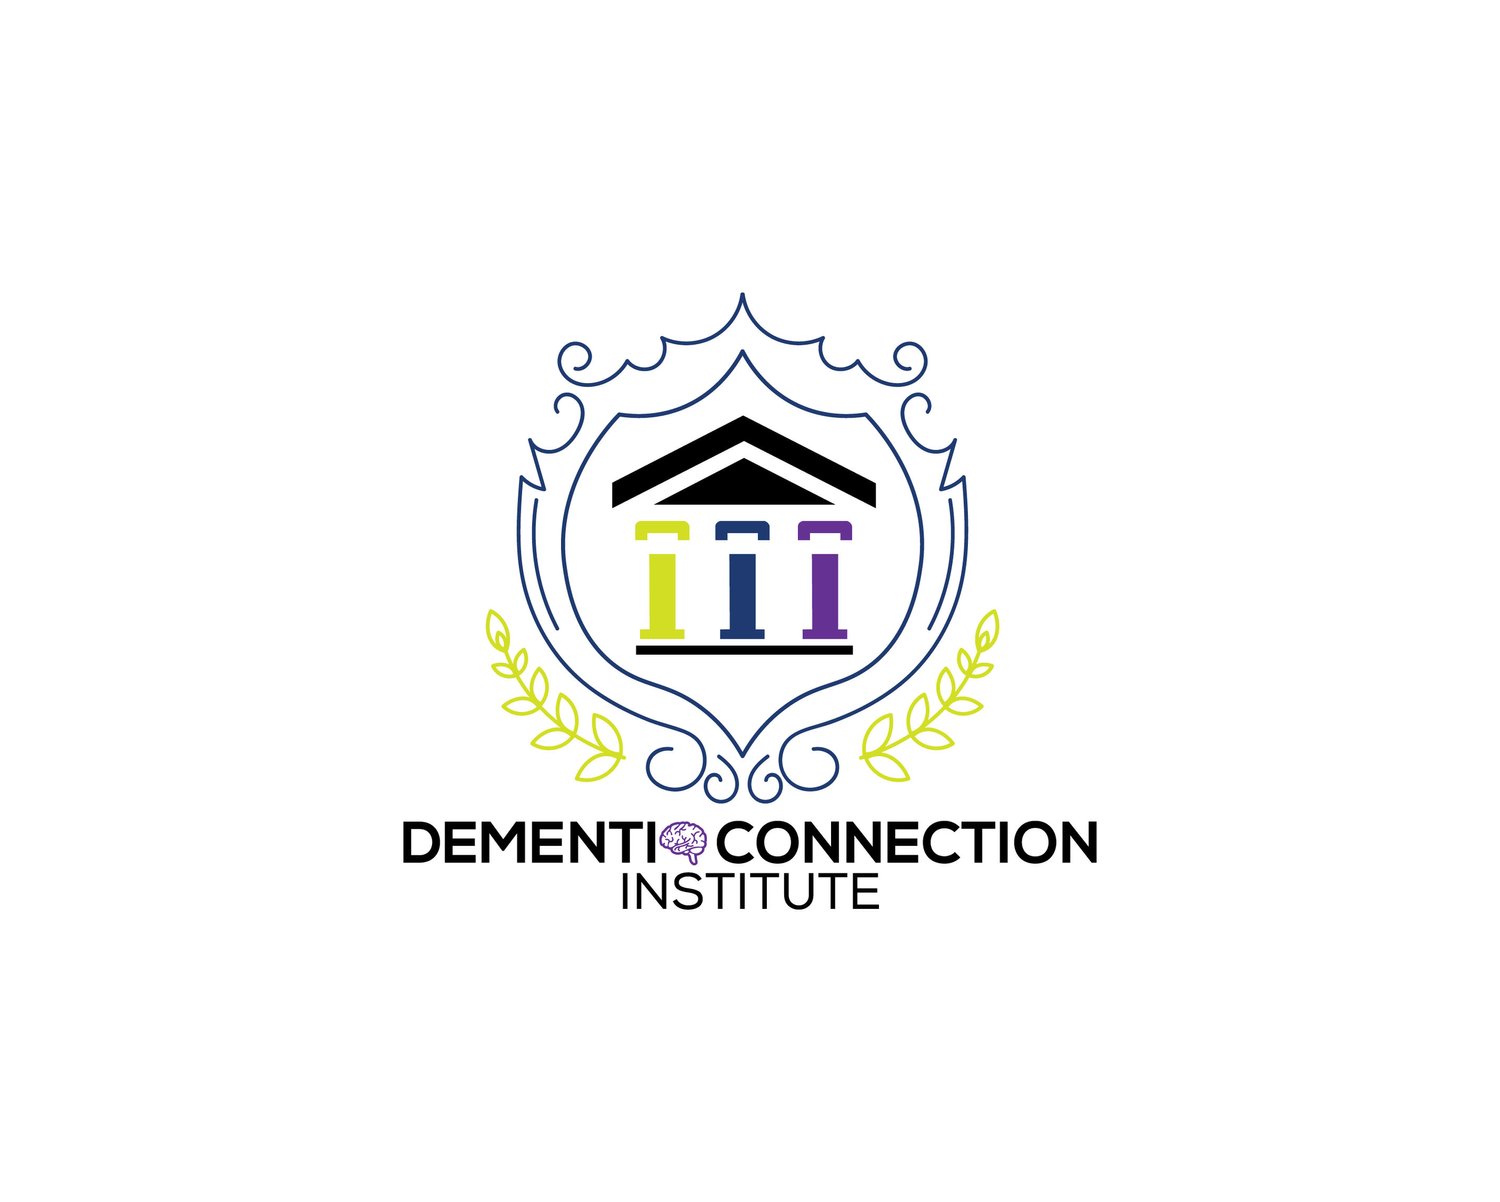 Dementia Connection Institute